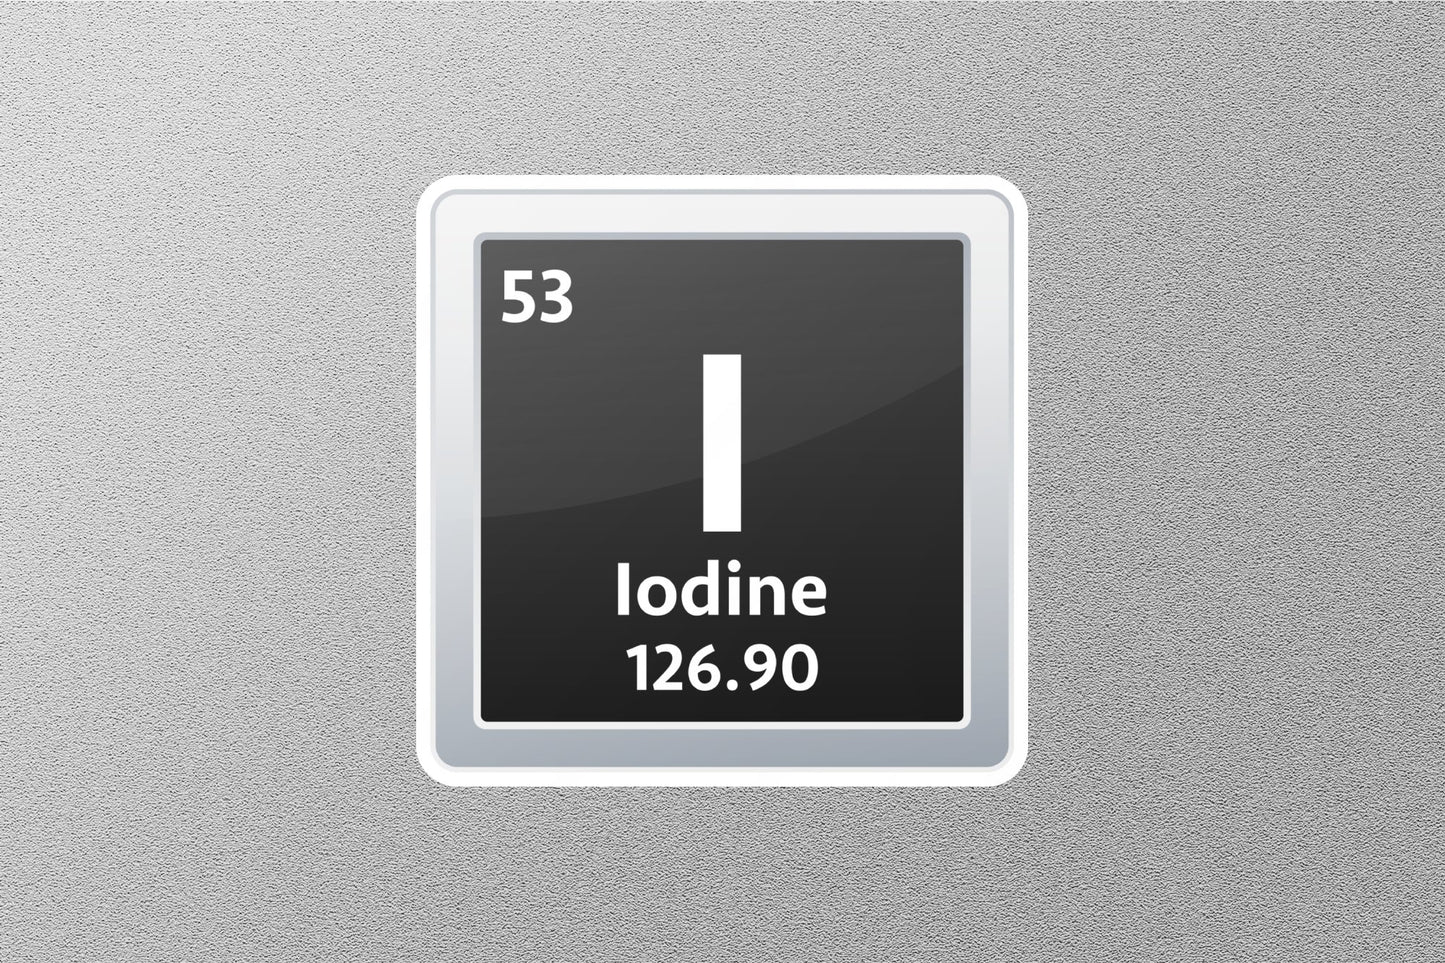 Lodine Periodic Element Sticker